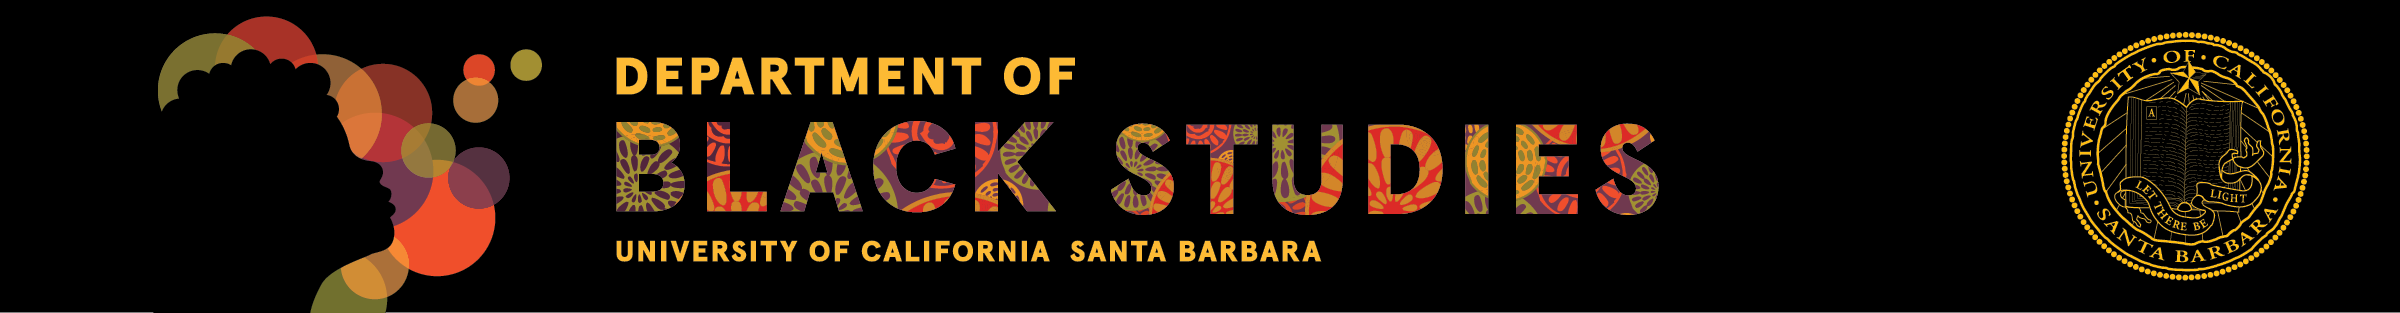 Department of Black Studies - UC Santa Barbara